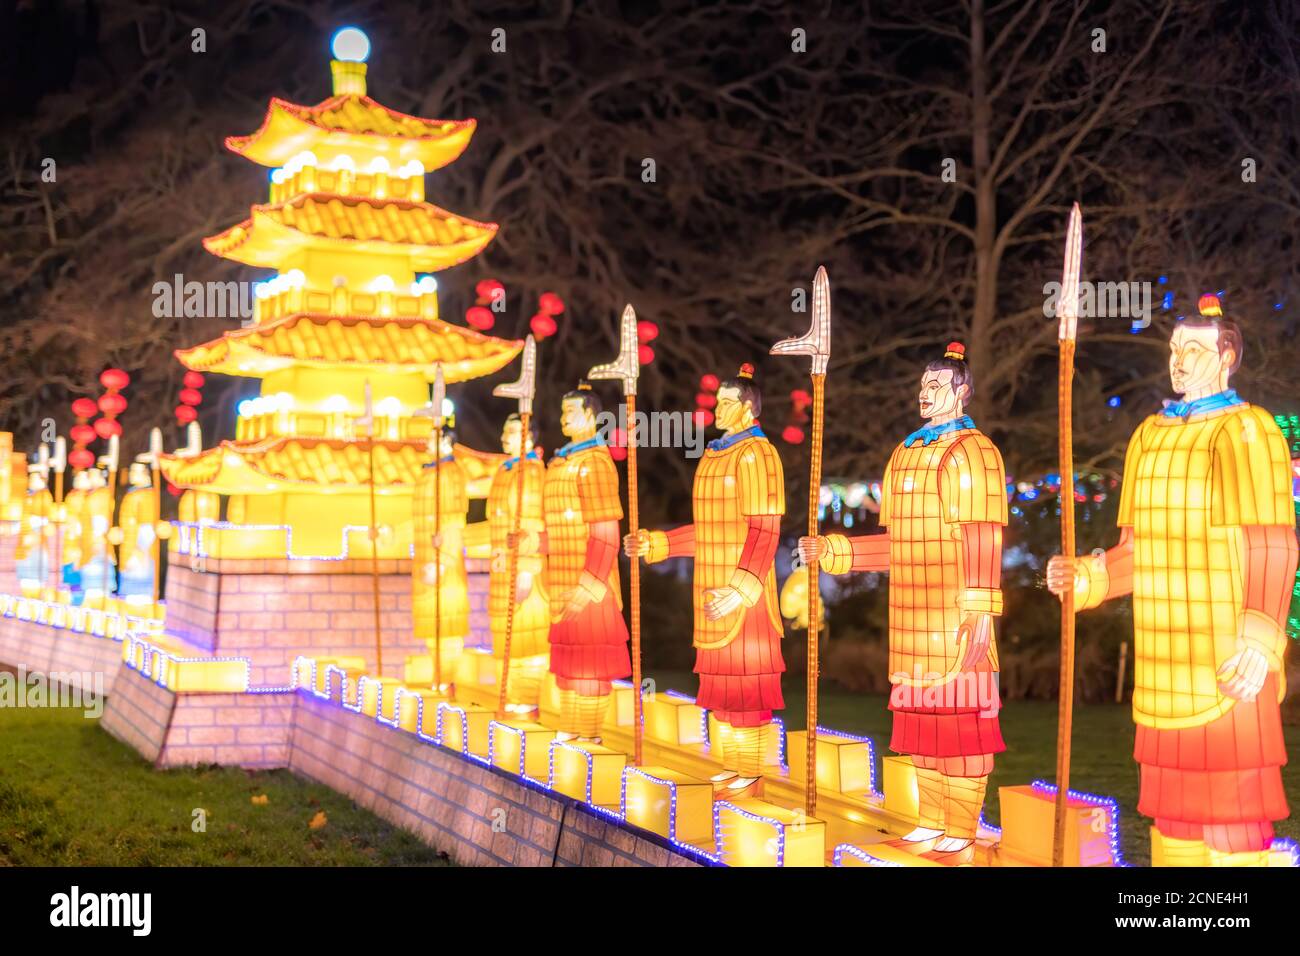 Luci selvagge allo zoo di Dublino. Mostra luminosa di soldati cinesi in terracotta sulla Grande Muraglia Cinese Foto Stock